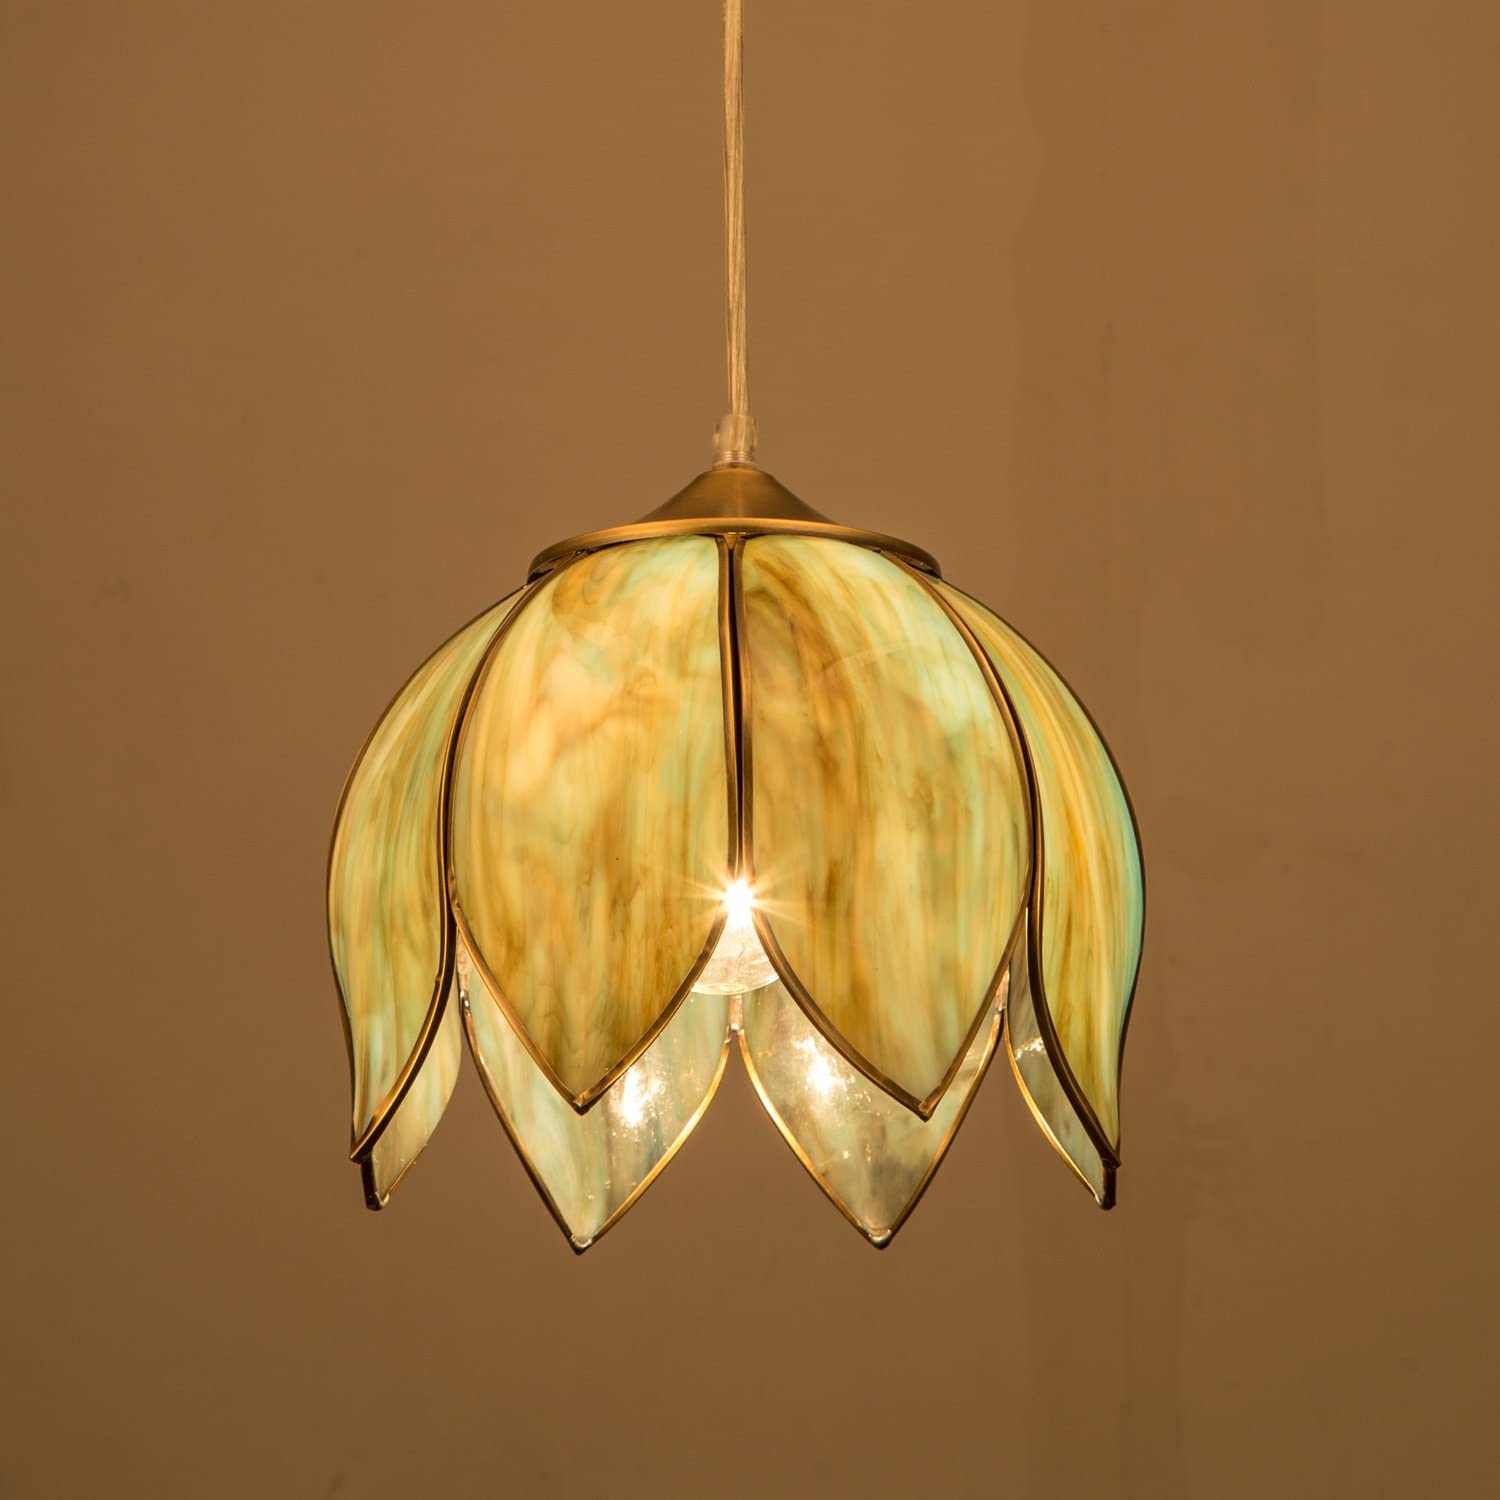 Decor lotus brass pendant light fixture farmhouse pendant chandelier